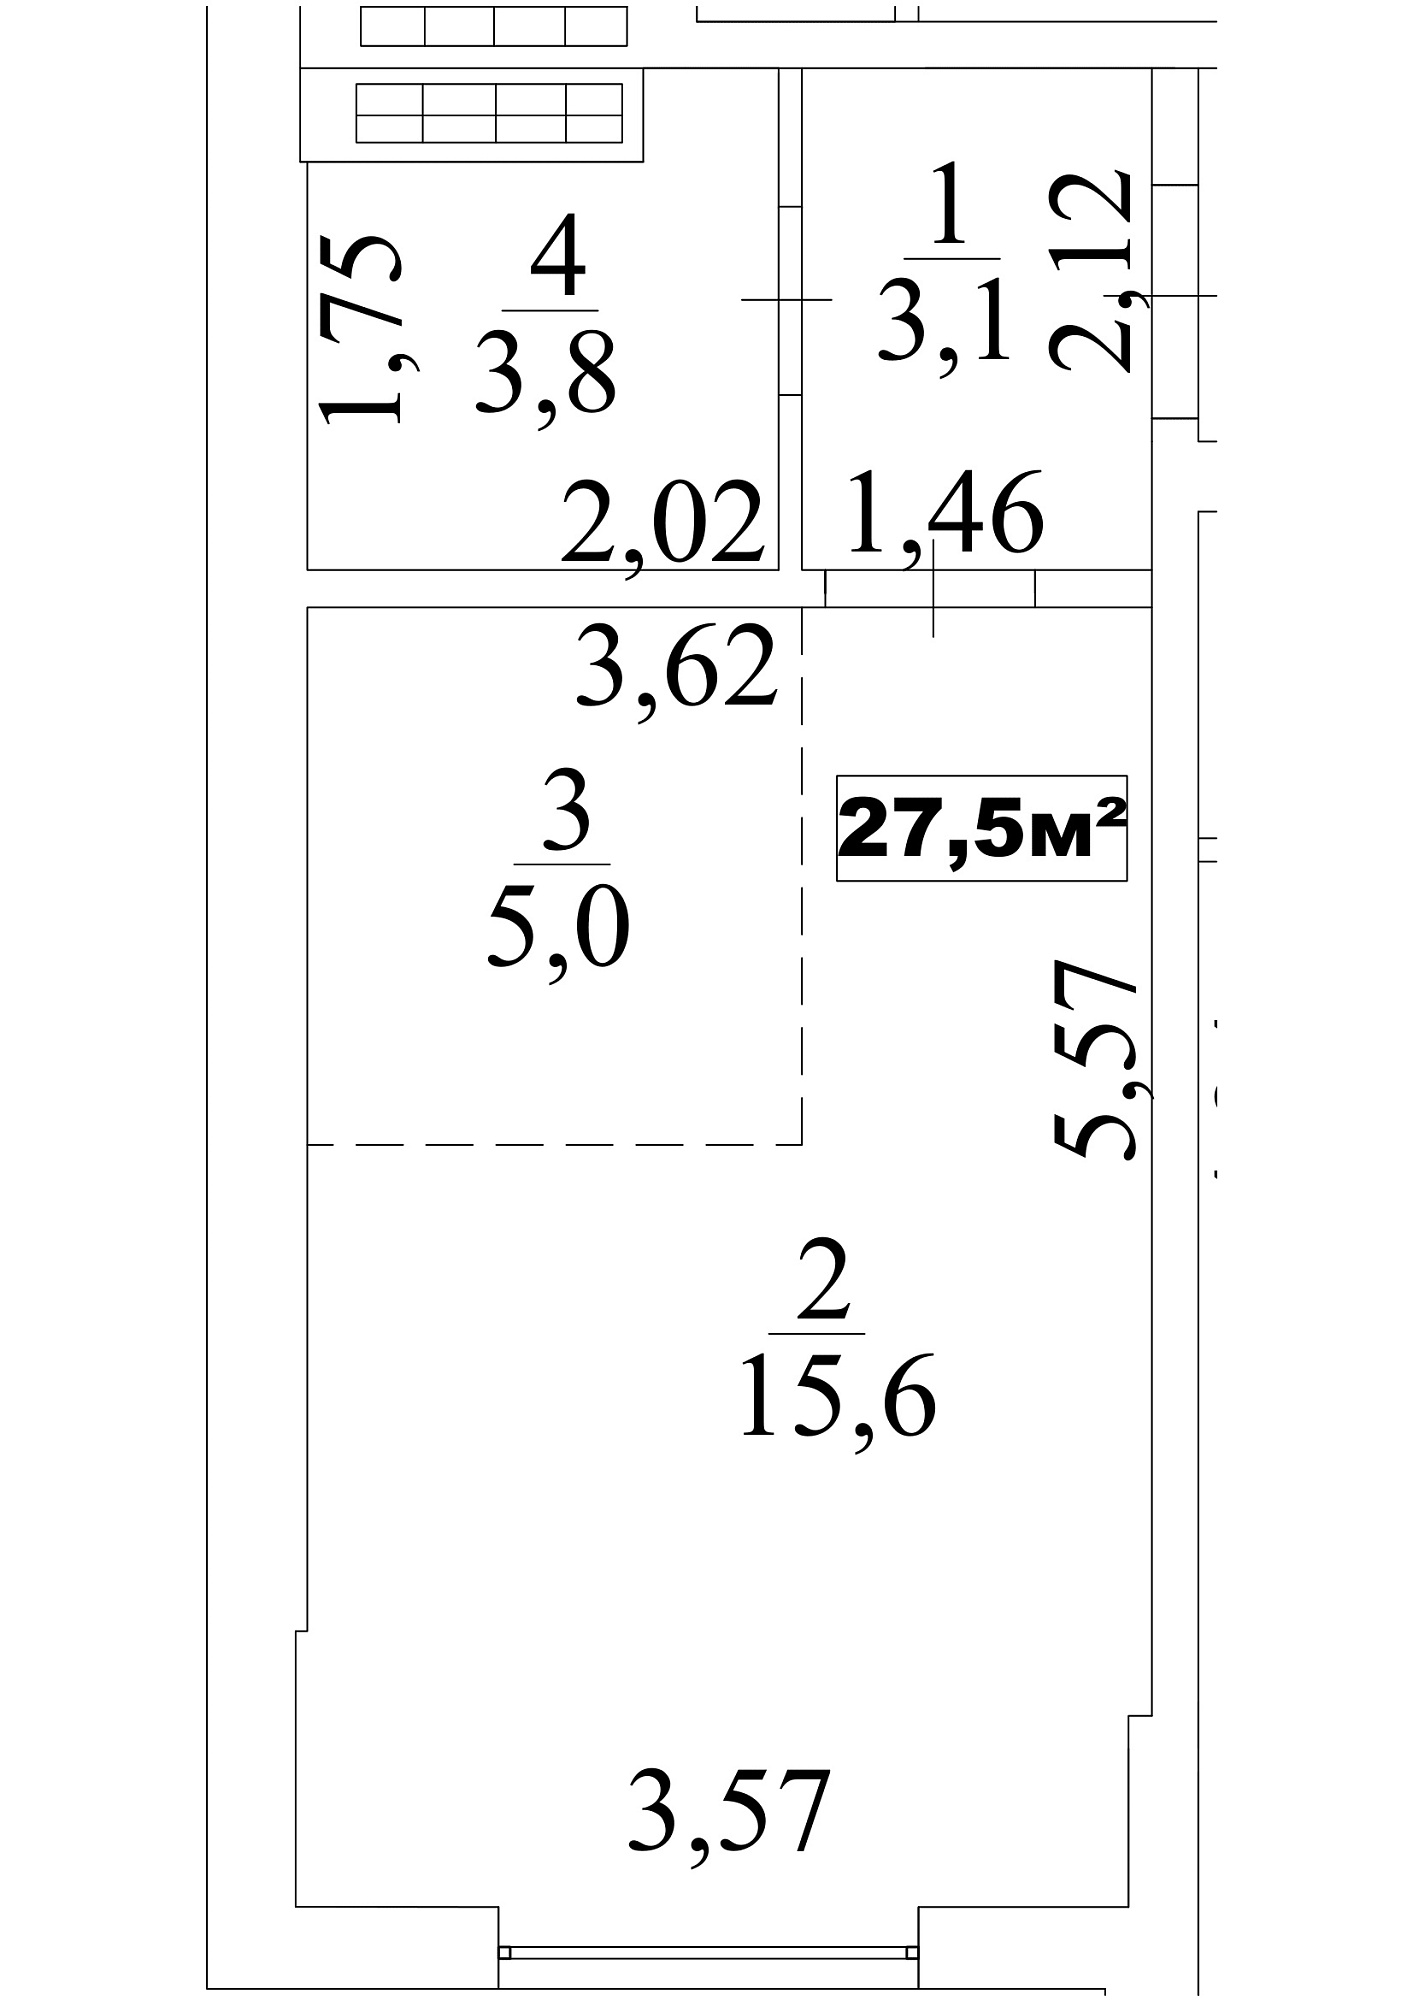 Планування Smart-квартира площею 27.5м2, AB-10-03/0021а.